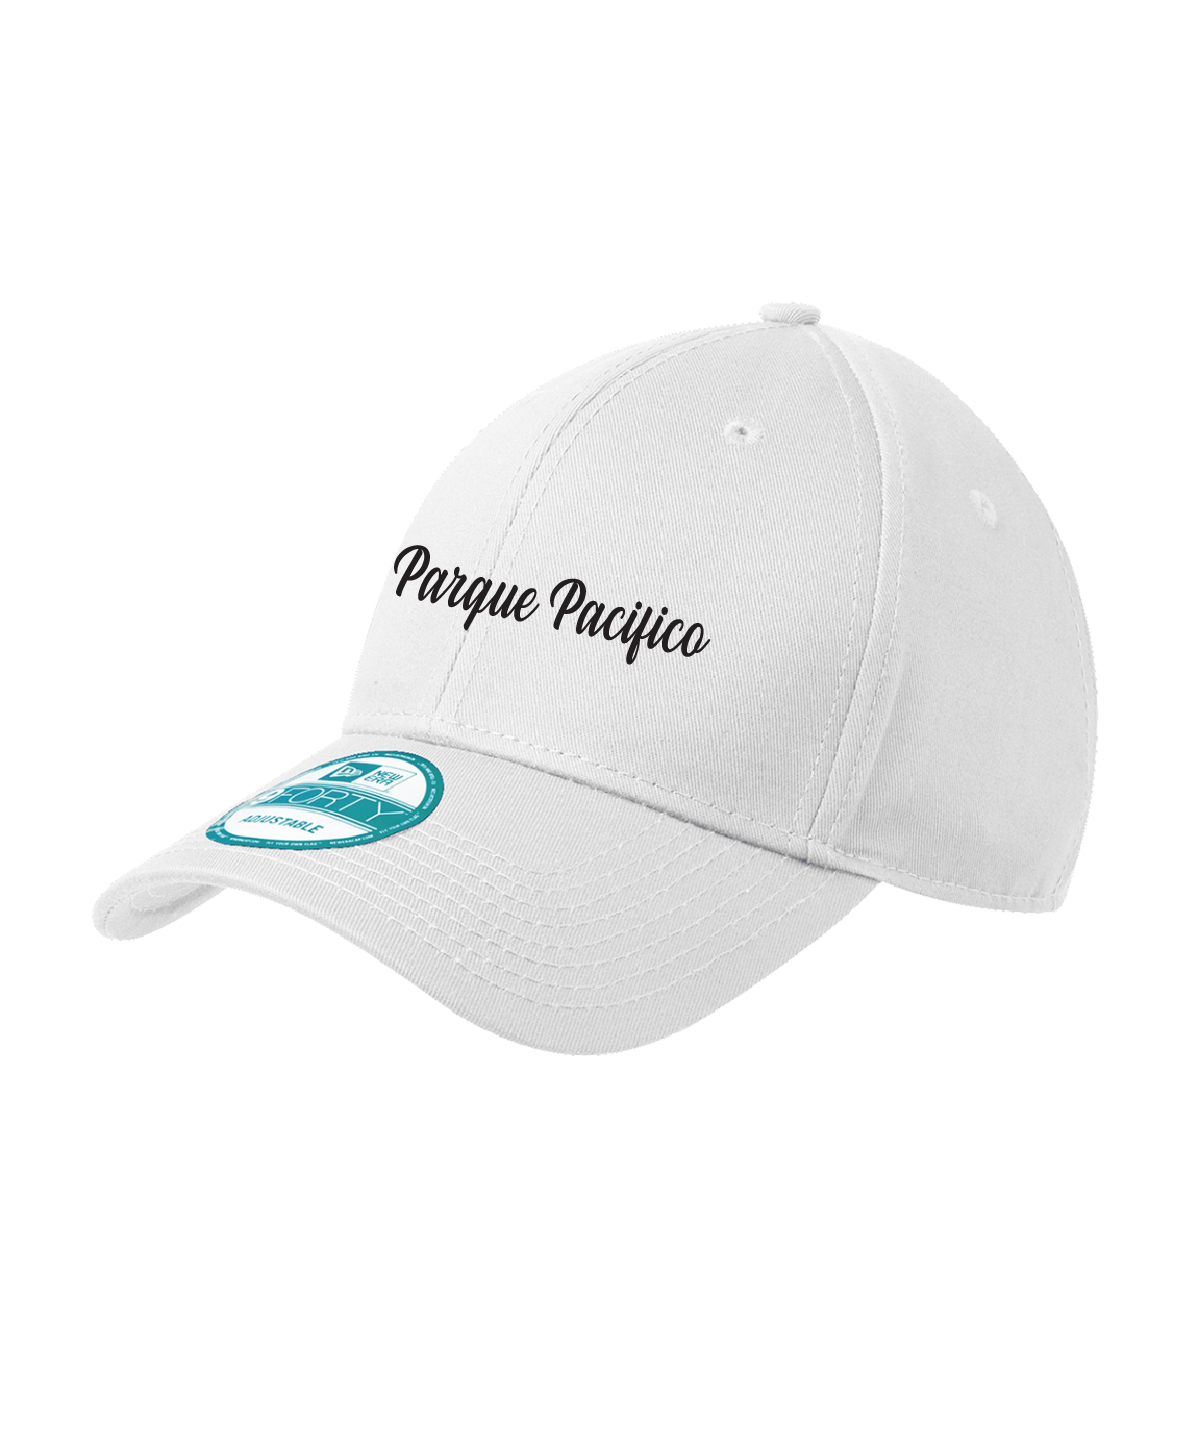 Parque Pacifico - New Era® - Adjustable Structured Cap